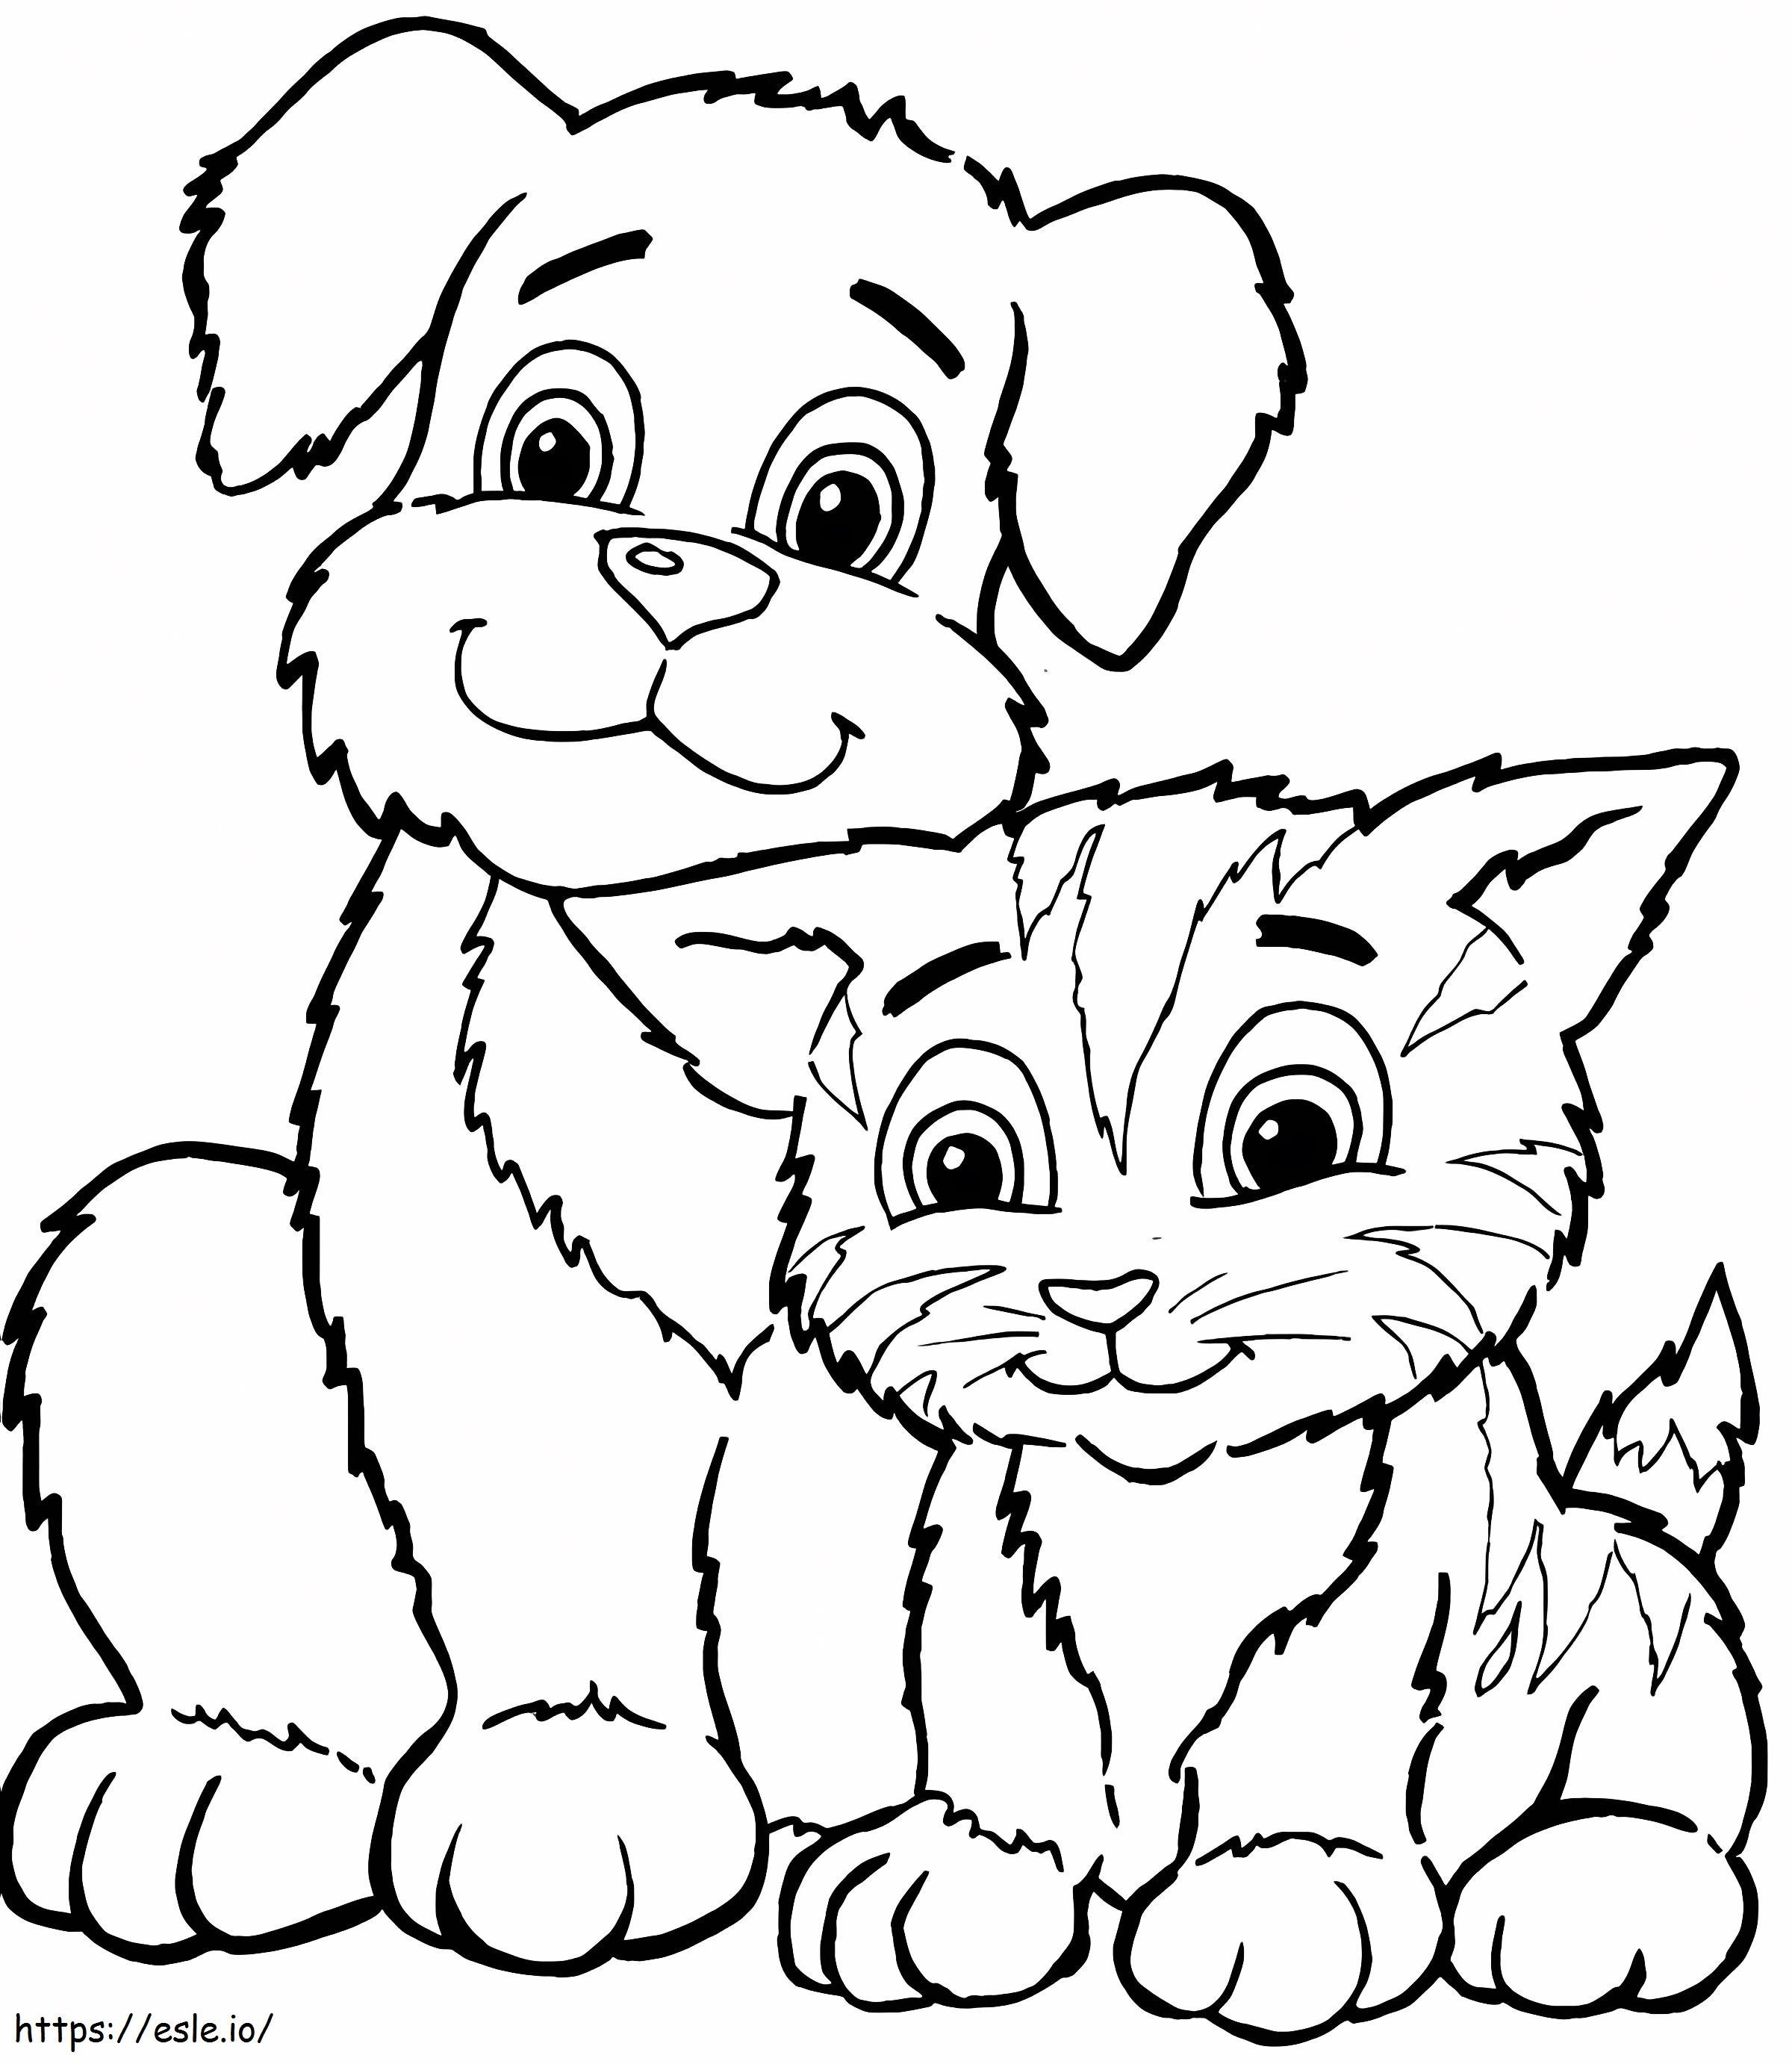 Cane e gatto carini da colorare